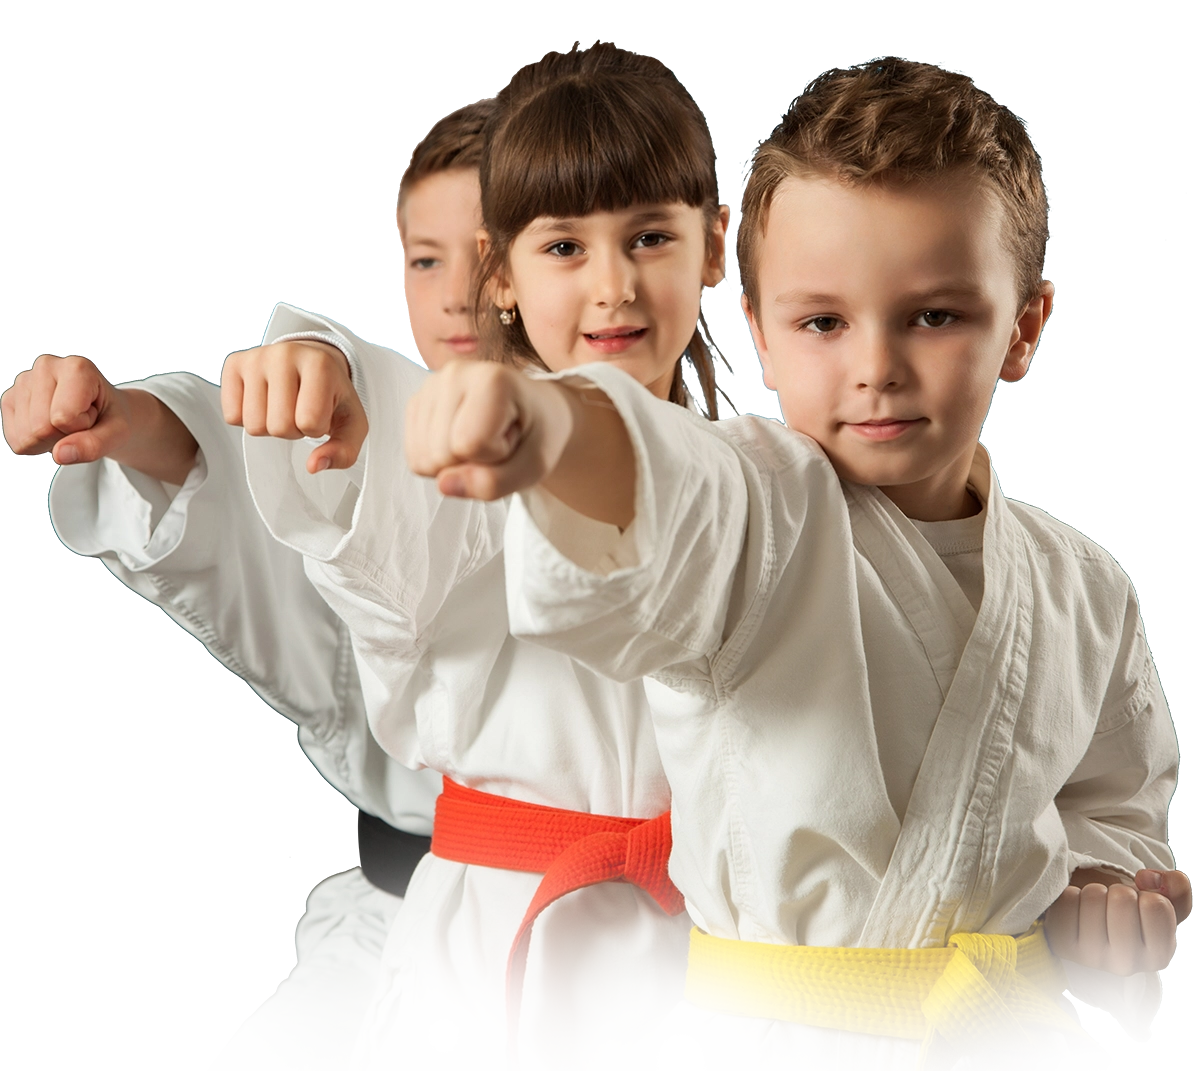 kids martial arts models